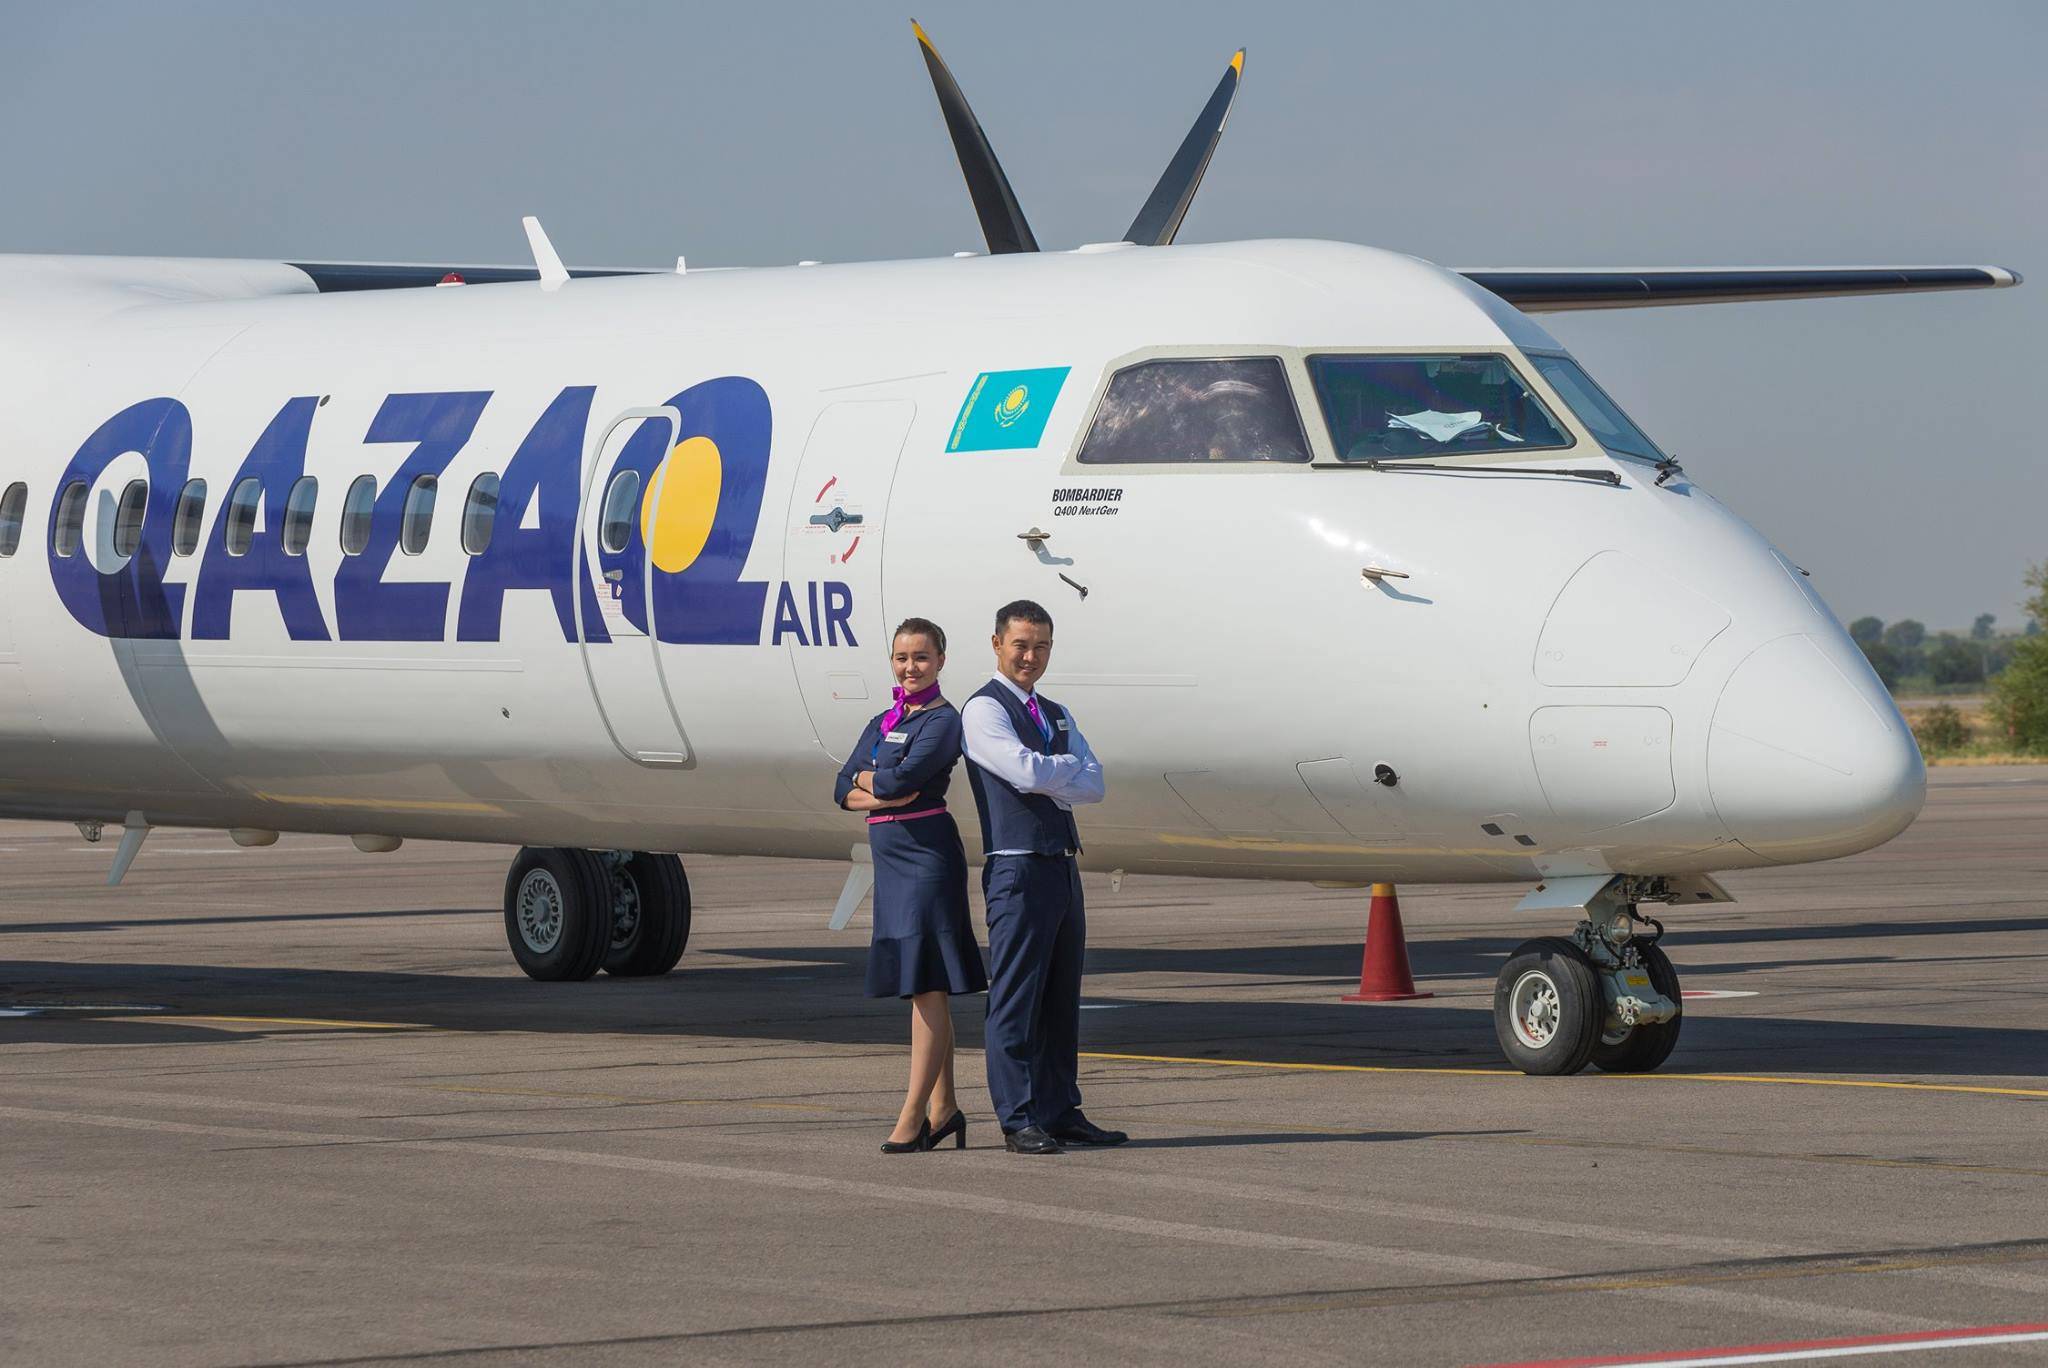 Авиакомпания azur air (азур эйр) история, самолеты, регистрация, питание на борту — авиакомпании и авиалинии россии и мира